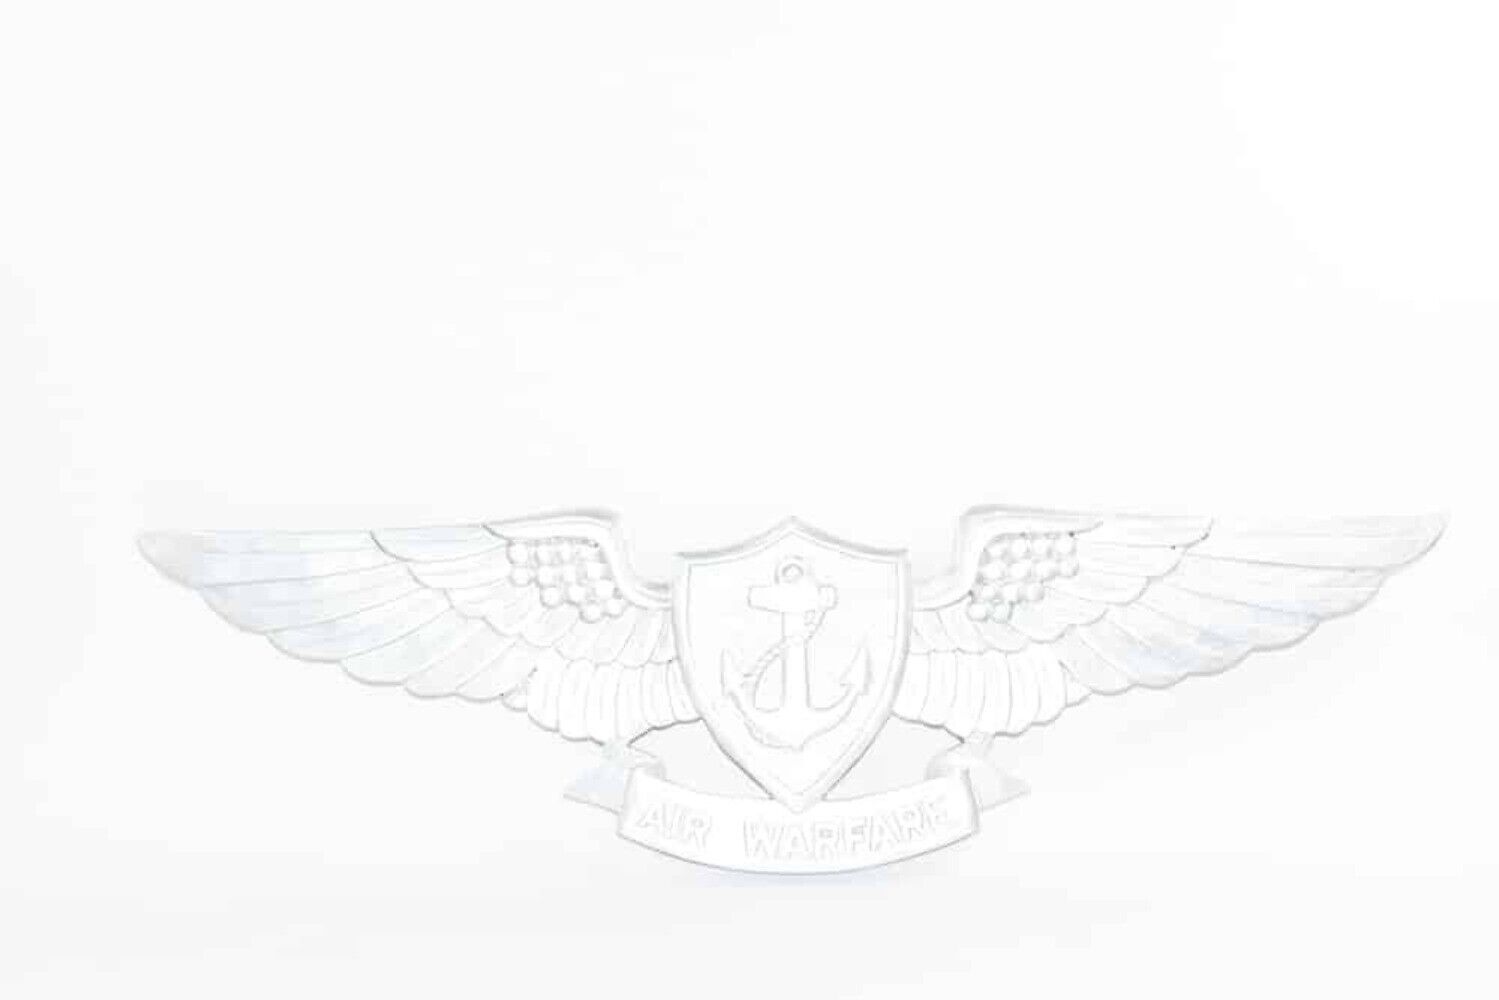 Enlisted Aviation Warfare Specialist EAWS Wings